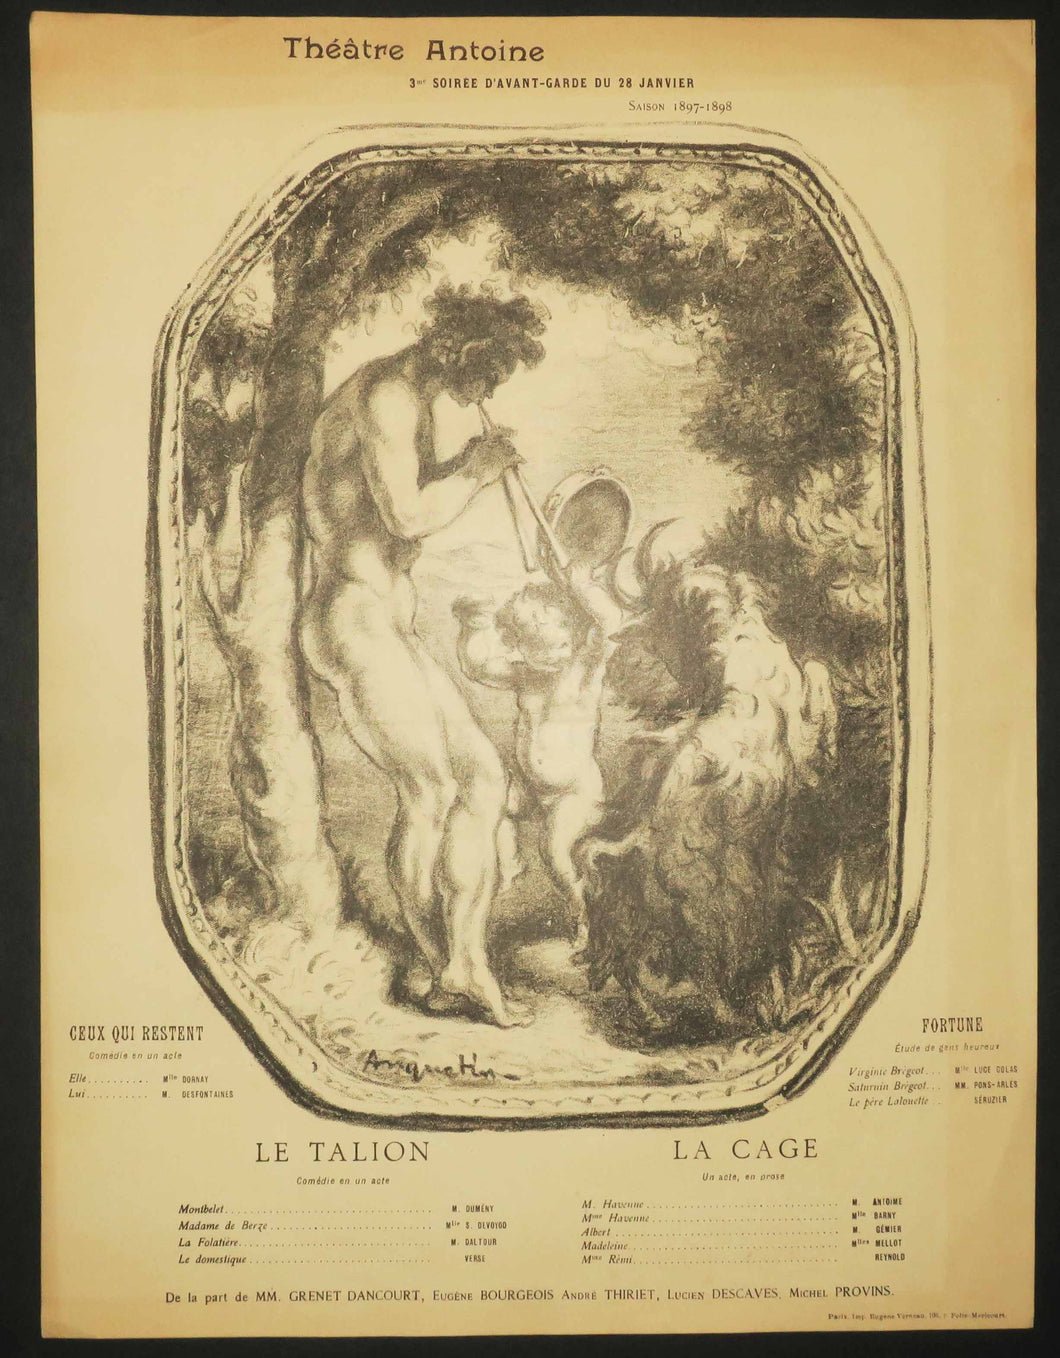 Le Talion; La Cage; Ceux qui restent; Fortune. Programme pour le Théâtre Antoine, 3ème Soirée d'avant-garde du 28 janvier, Saison 1897-1898. 